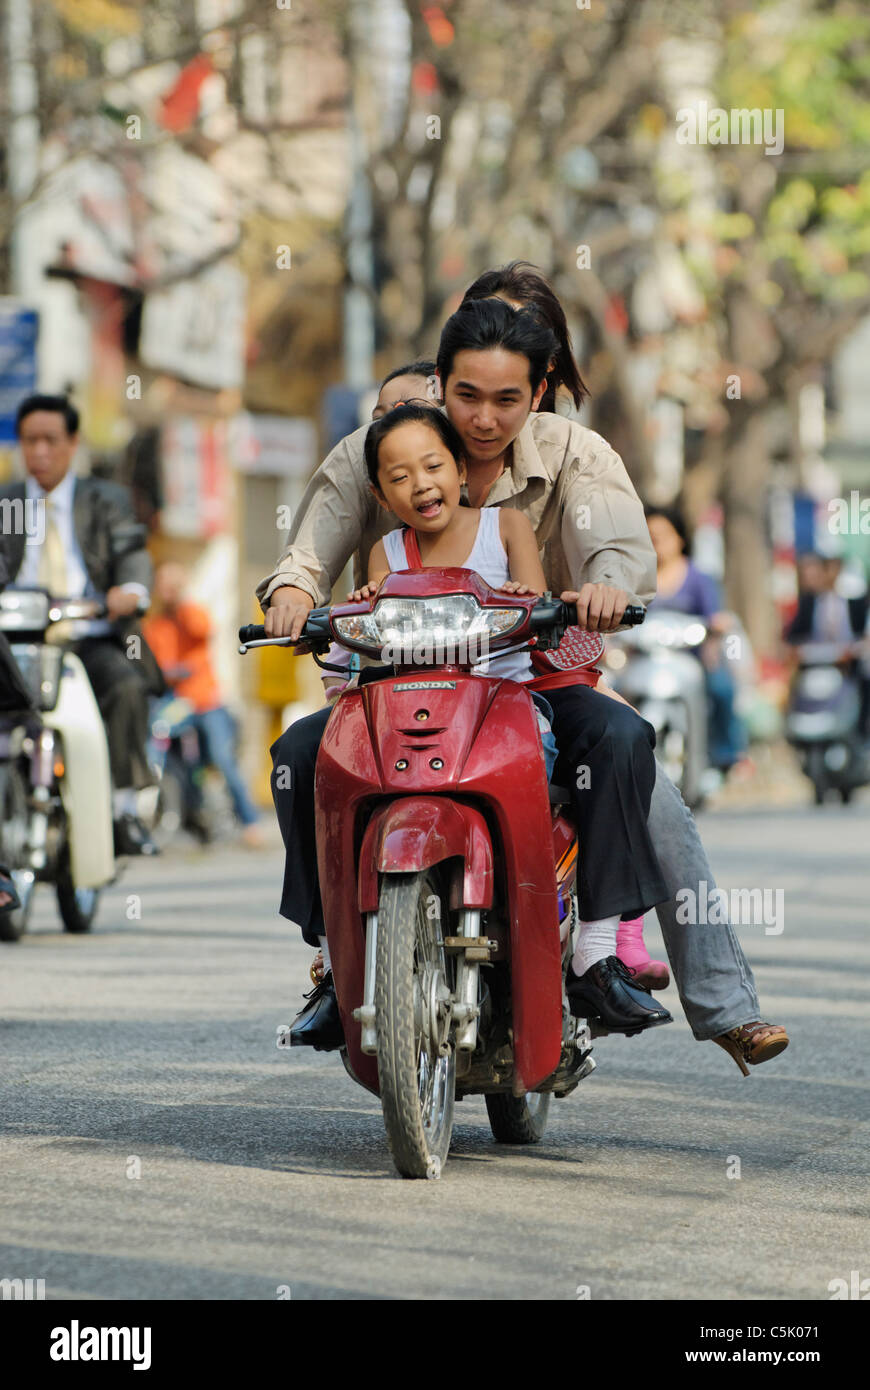 Asia, Vietnam, Hanoi. Hanoi old quarter. Vietnamese family riding on a small motorbike through Hanoi. Stock Photo